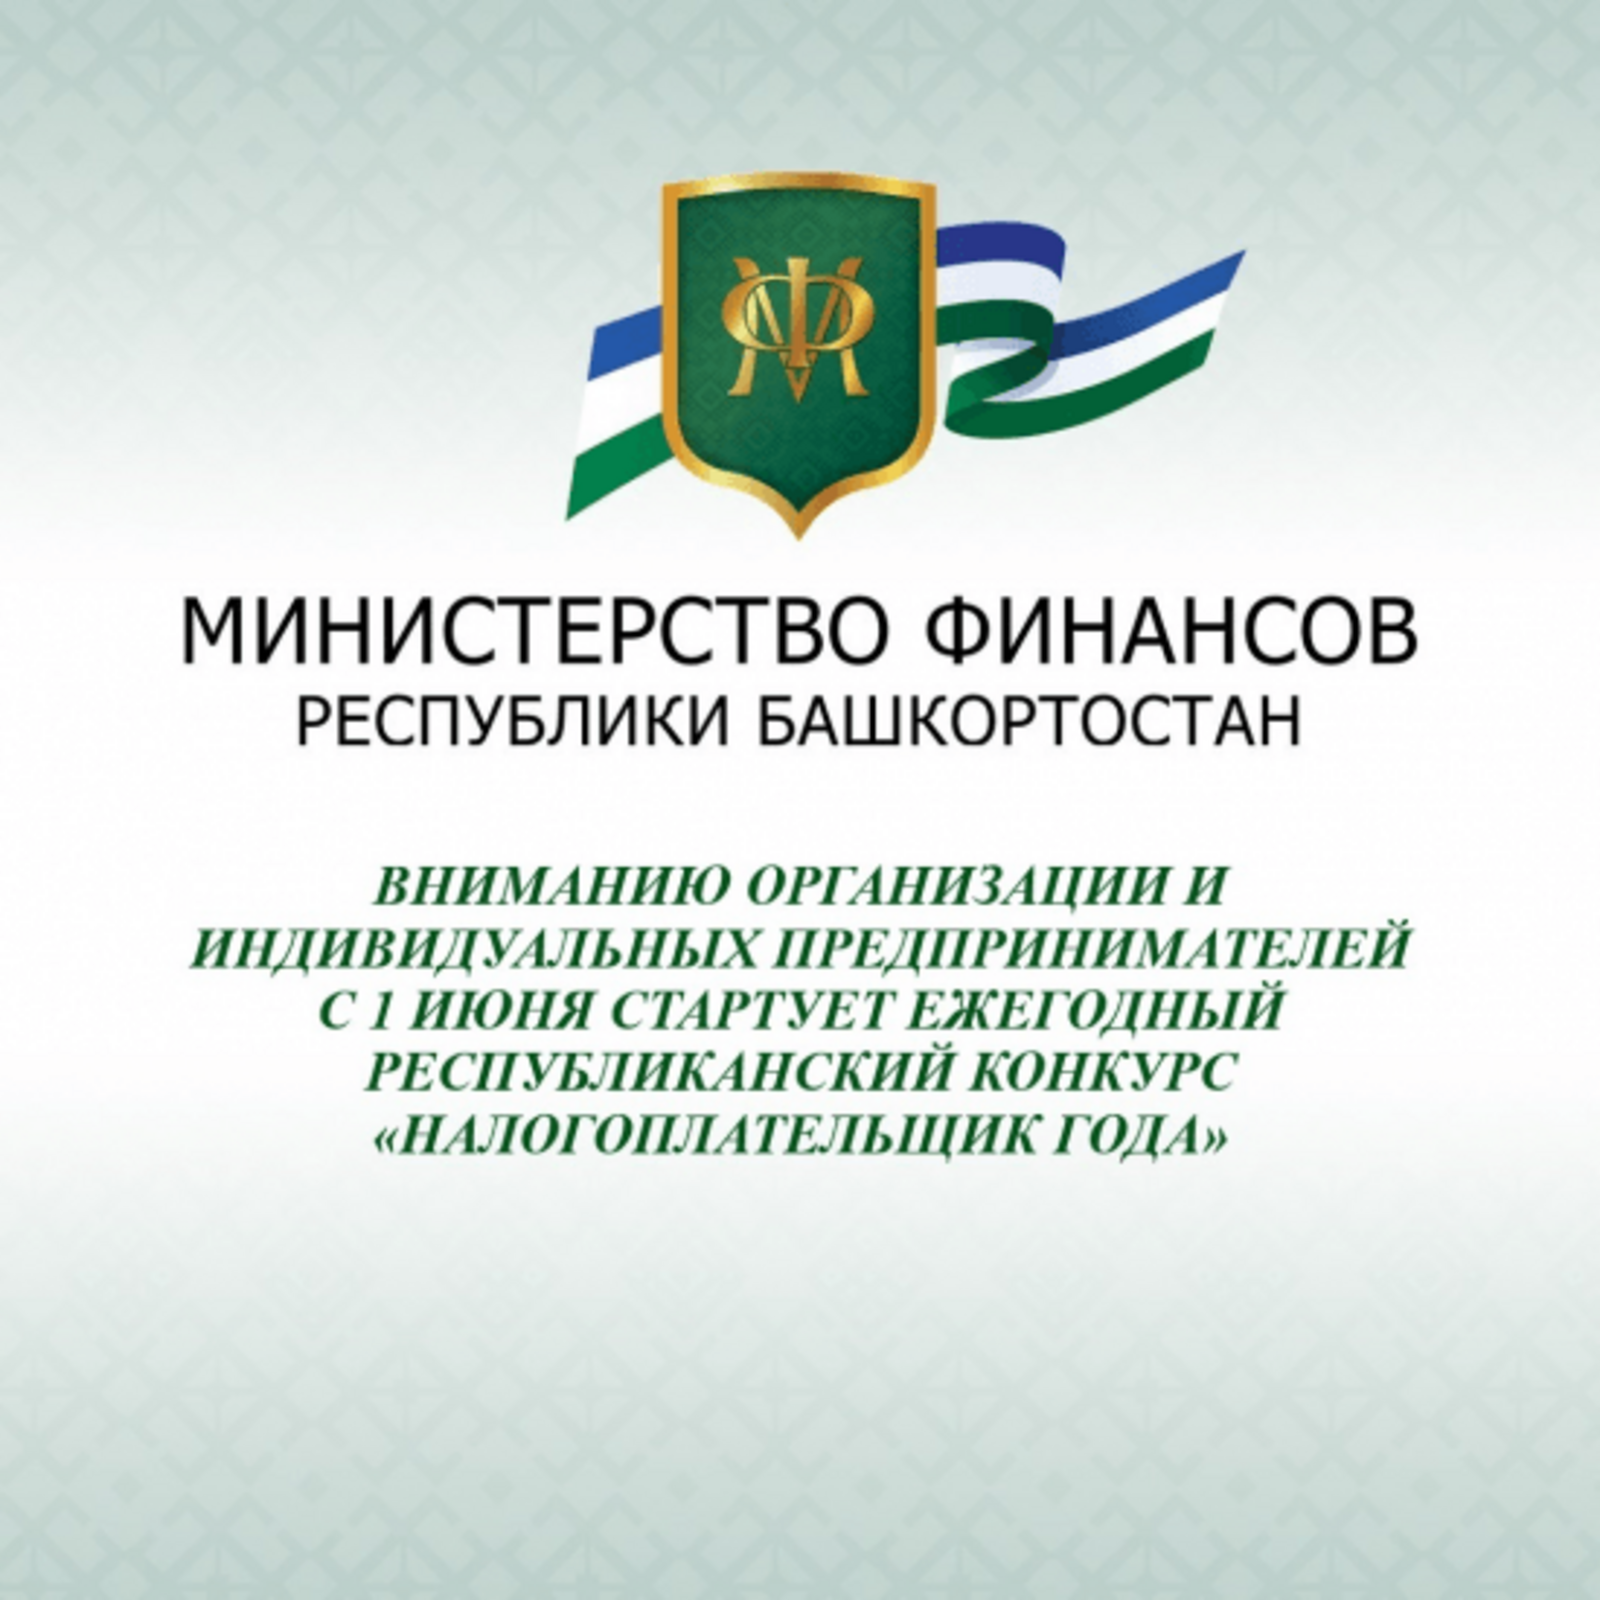 В Башкирии начинается приём заявок на участие в республиканском конкурсе "Налогоплательщик года"